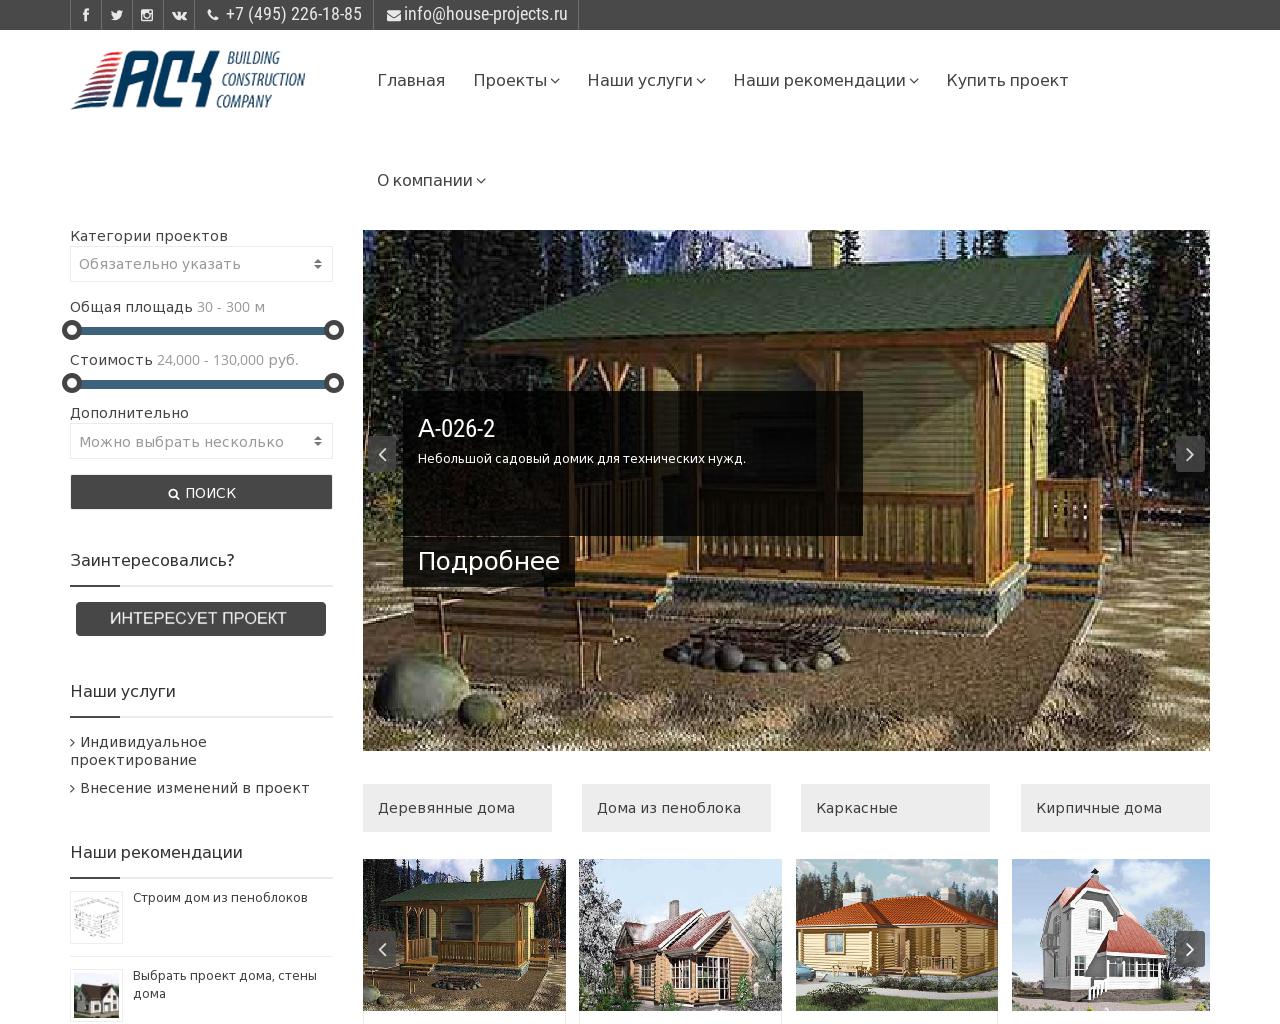 Изображение сайта house-projects.ru в разрешении 1280x1024